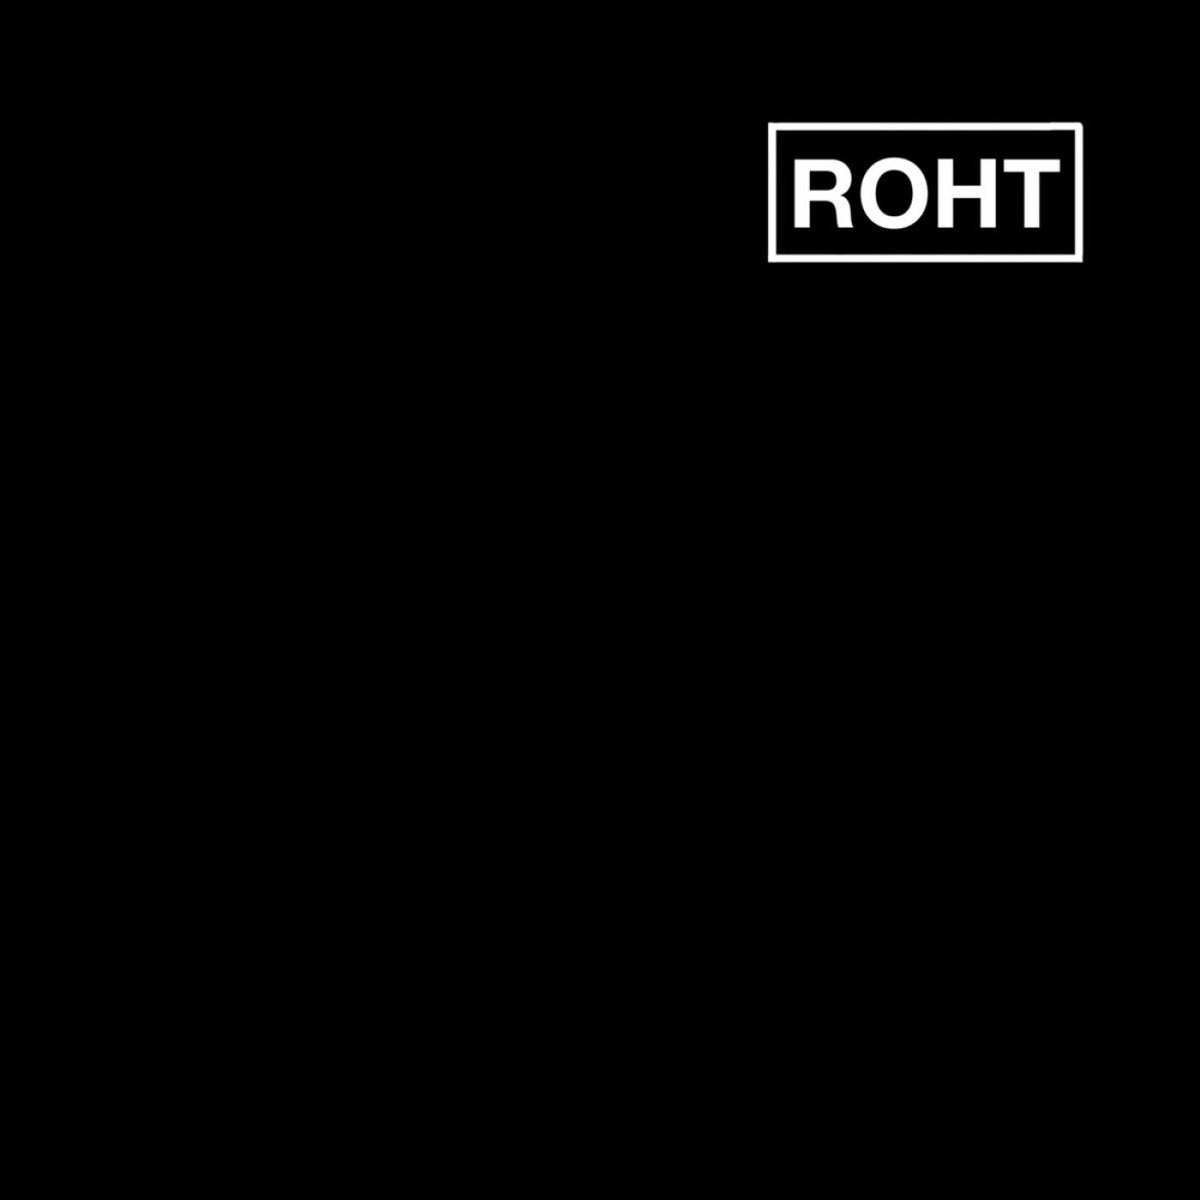 Roht - S/T 7" EP